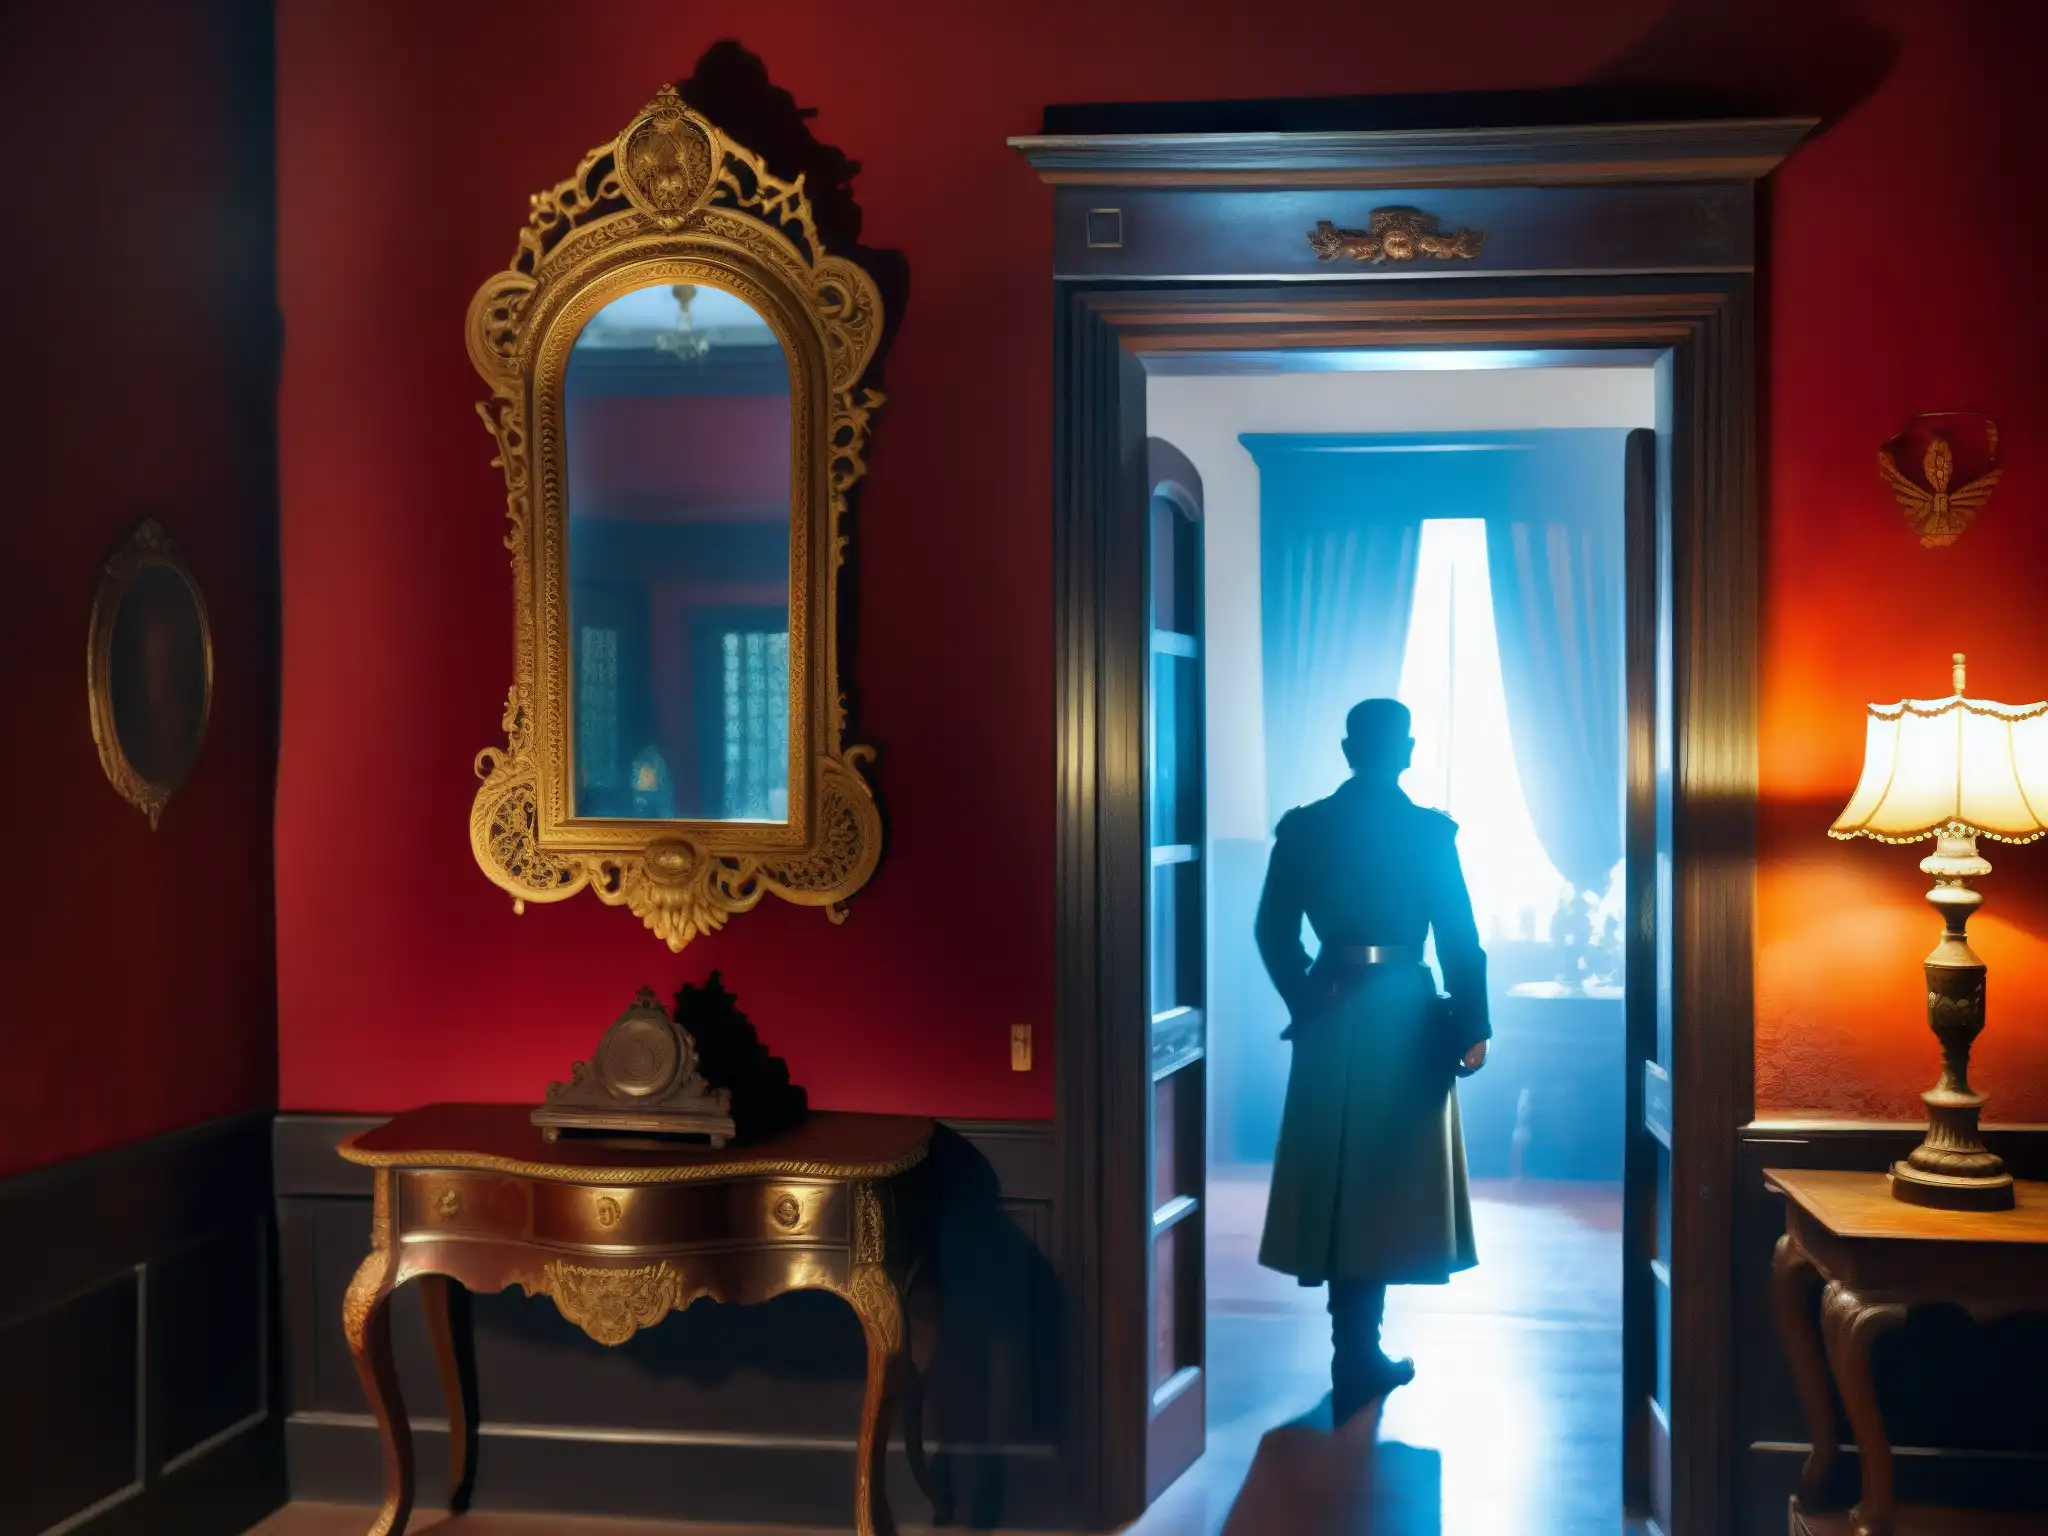 En la misteriosa Casa Roja, un fantasma colonial británico se refleja en un antiguo espejo, creando una atmósfera paranormal